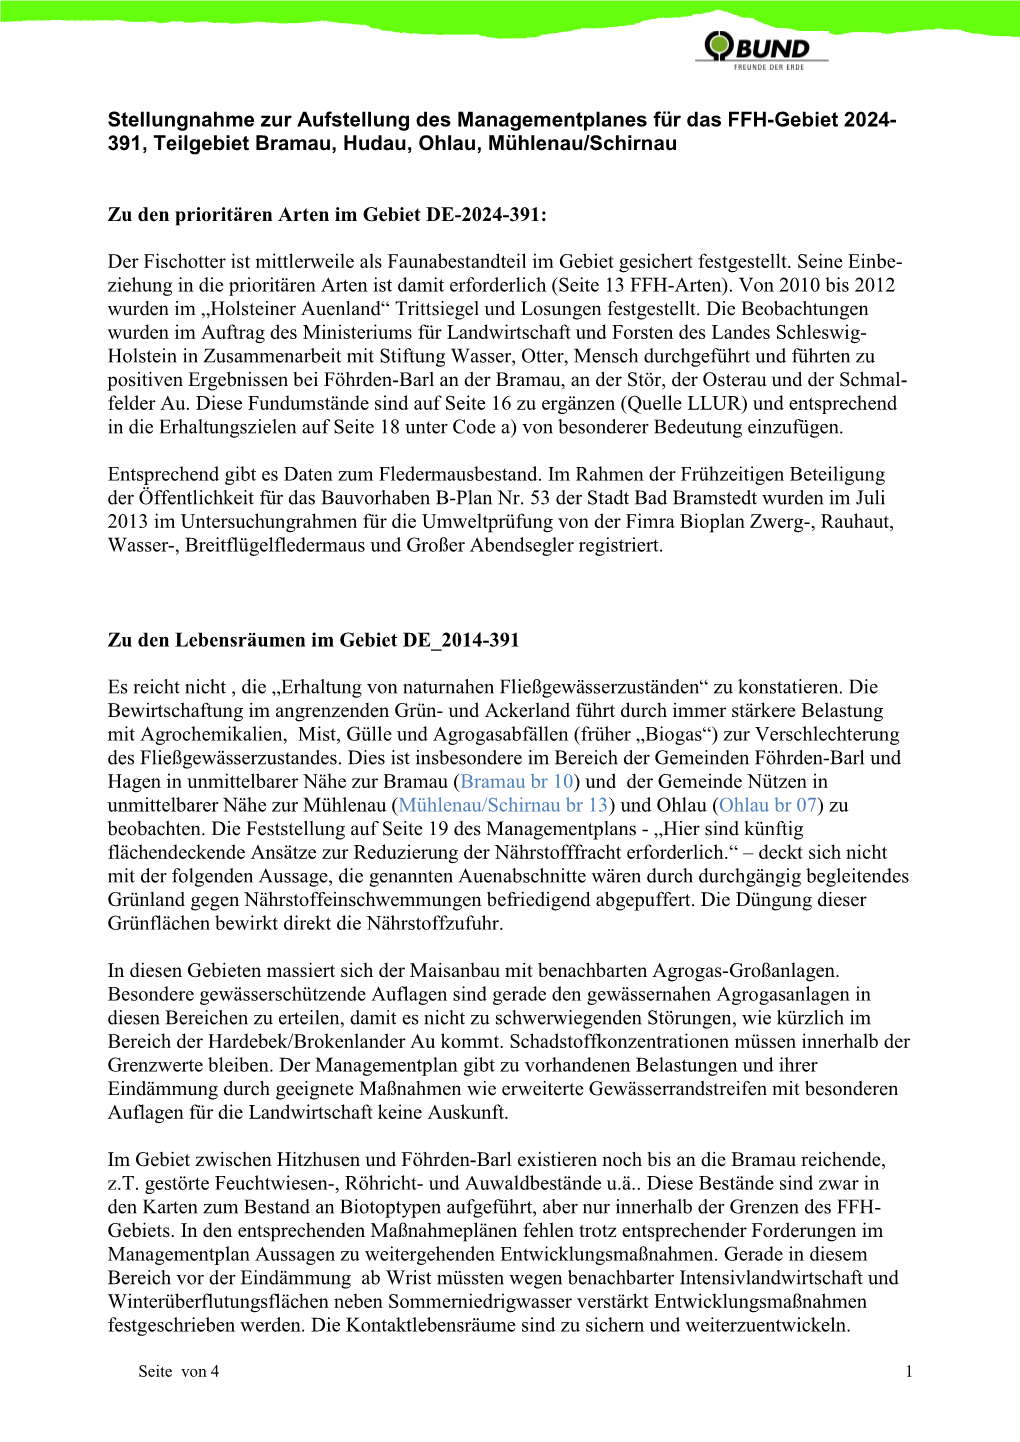 Stellungnahme Zur Aufstellung Des Managementplanes Für Das FFH-Gebiet 2024- 391, Teilgebiet Bramau, Hudau, Ohlau, Mühlenau/Schirnau